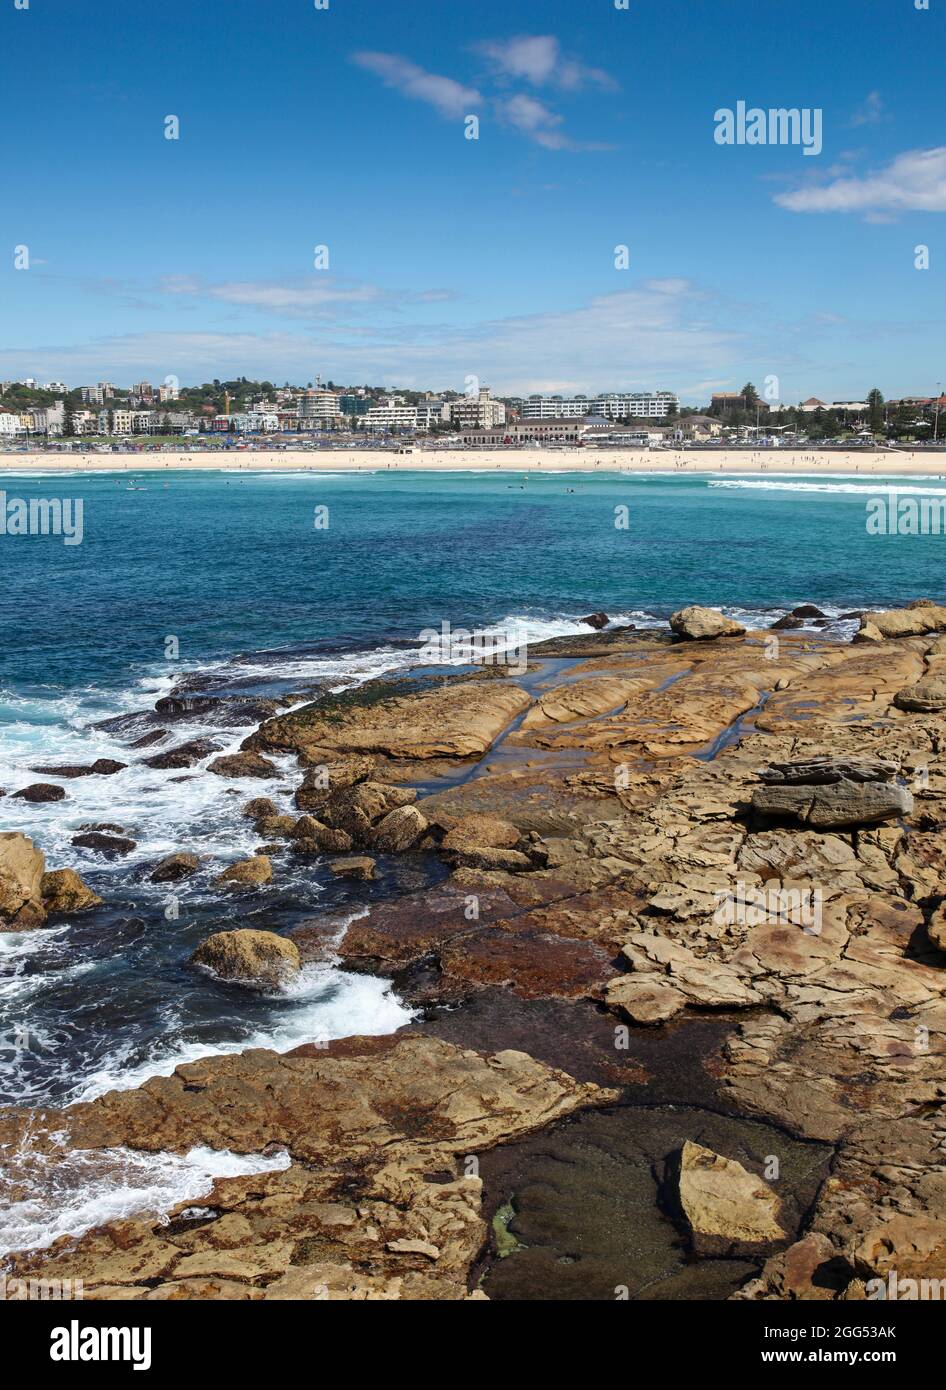 Bondi Beach es quizás la playa más famosa de Australia. Estas imágenes son de las rocas en el promontorio norte. Bondi Beach - Nueva Gales del Sur - Australia Foto de stock